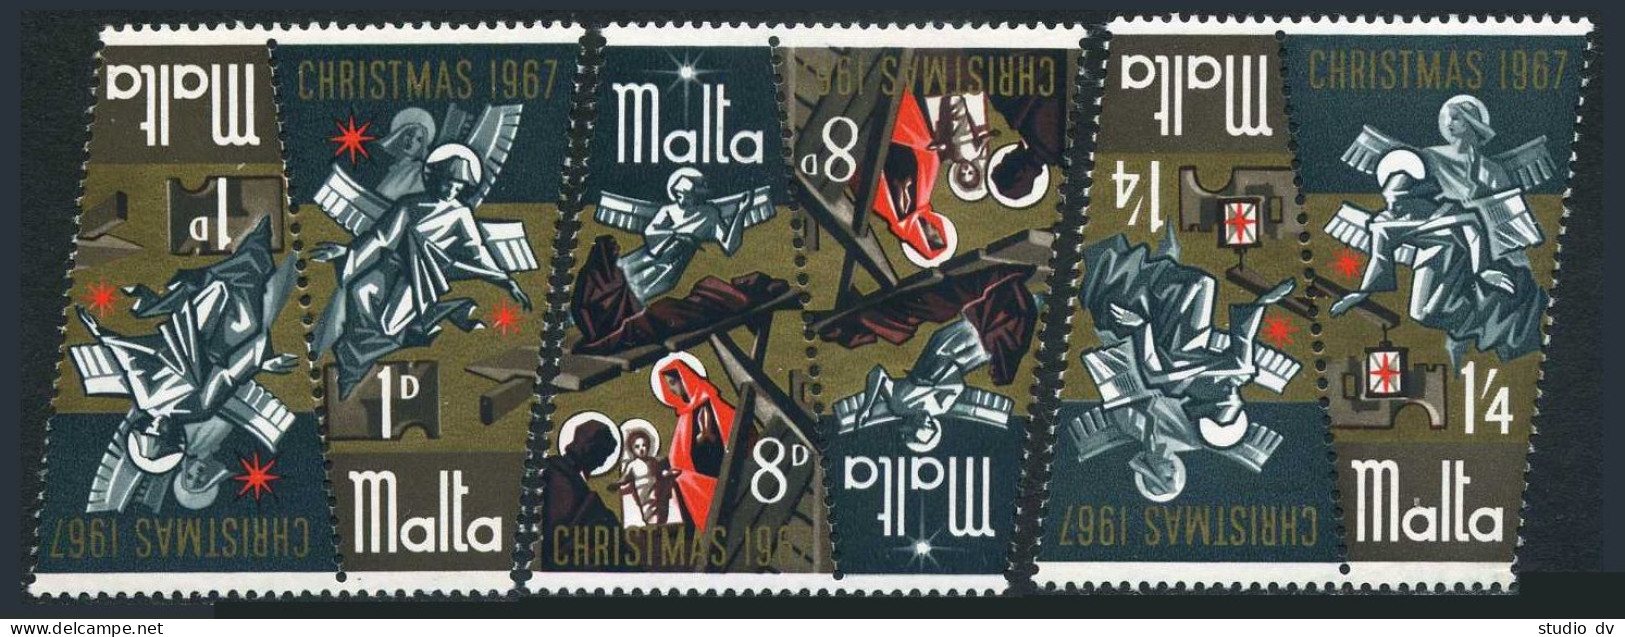 Malta 375-377 Tete-beche, MNH. Michel 364-366. Christmas 1967, Nativity. - Malta